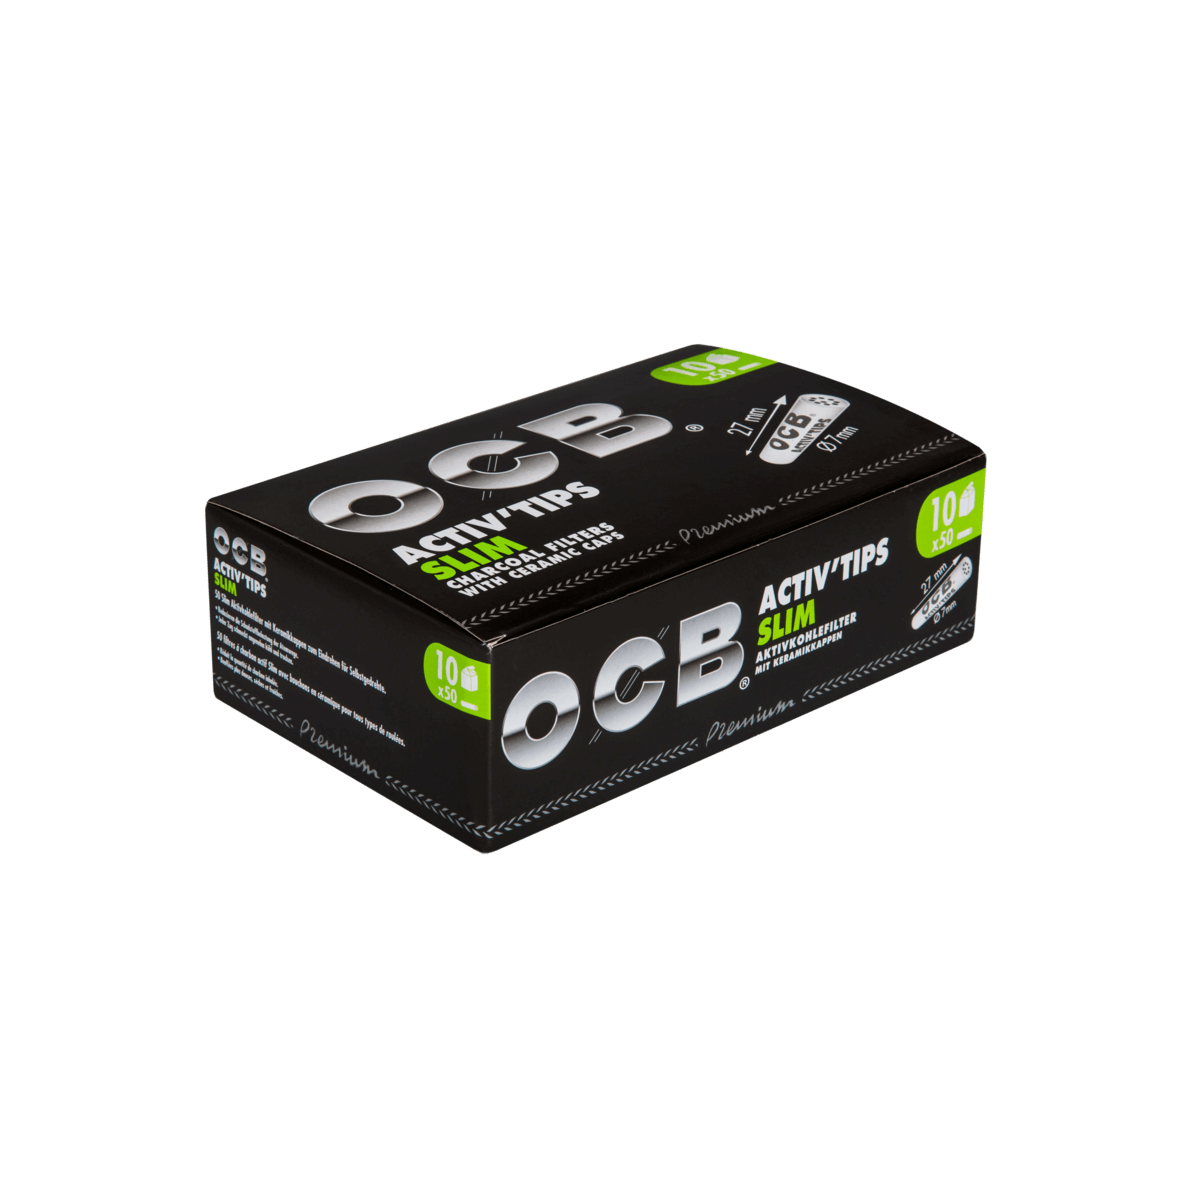 OCB Premium Activ’Tips Slim, Schwarz, 7 mm a 50 St. | 10 Boxen